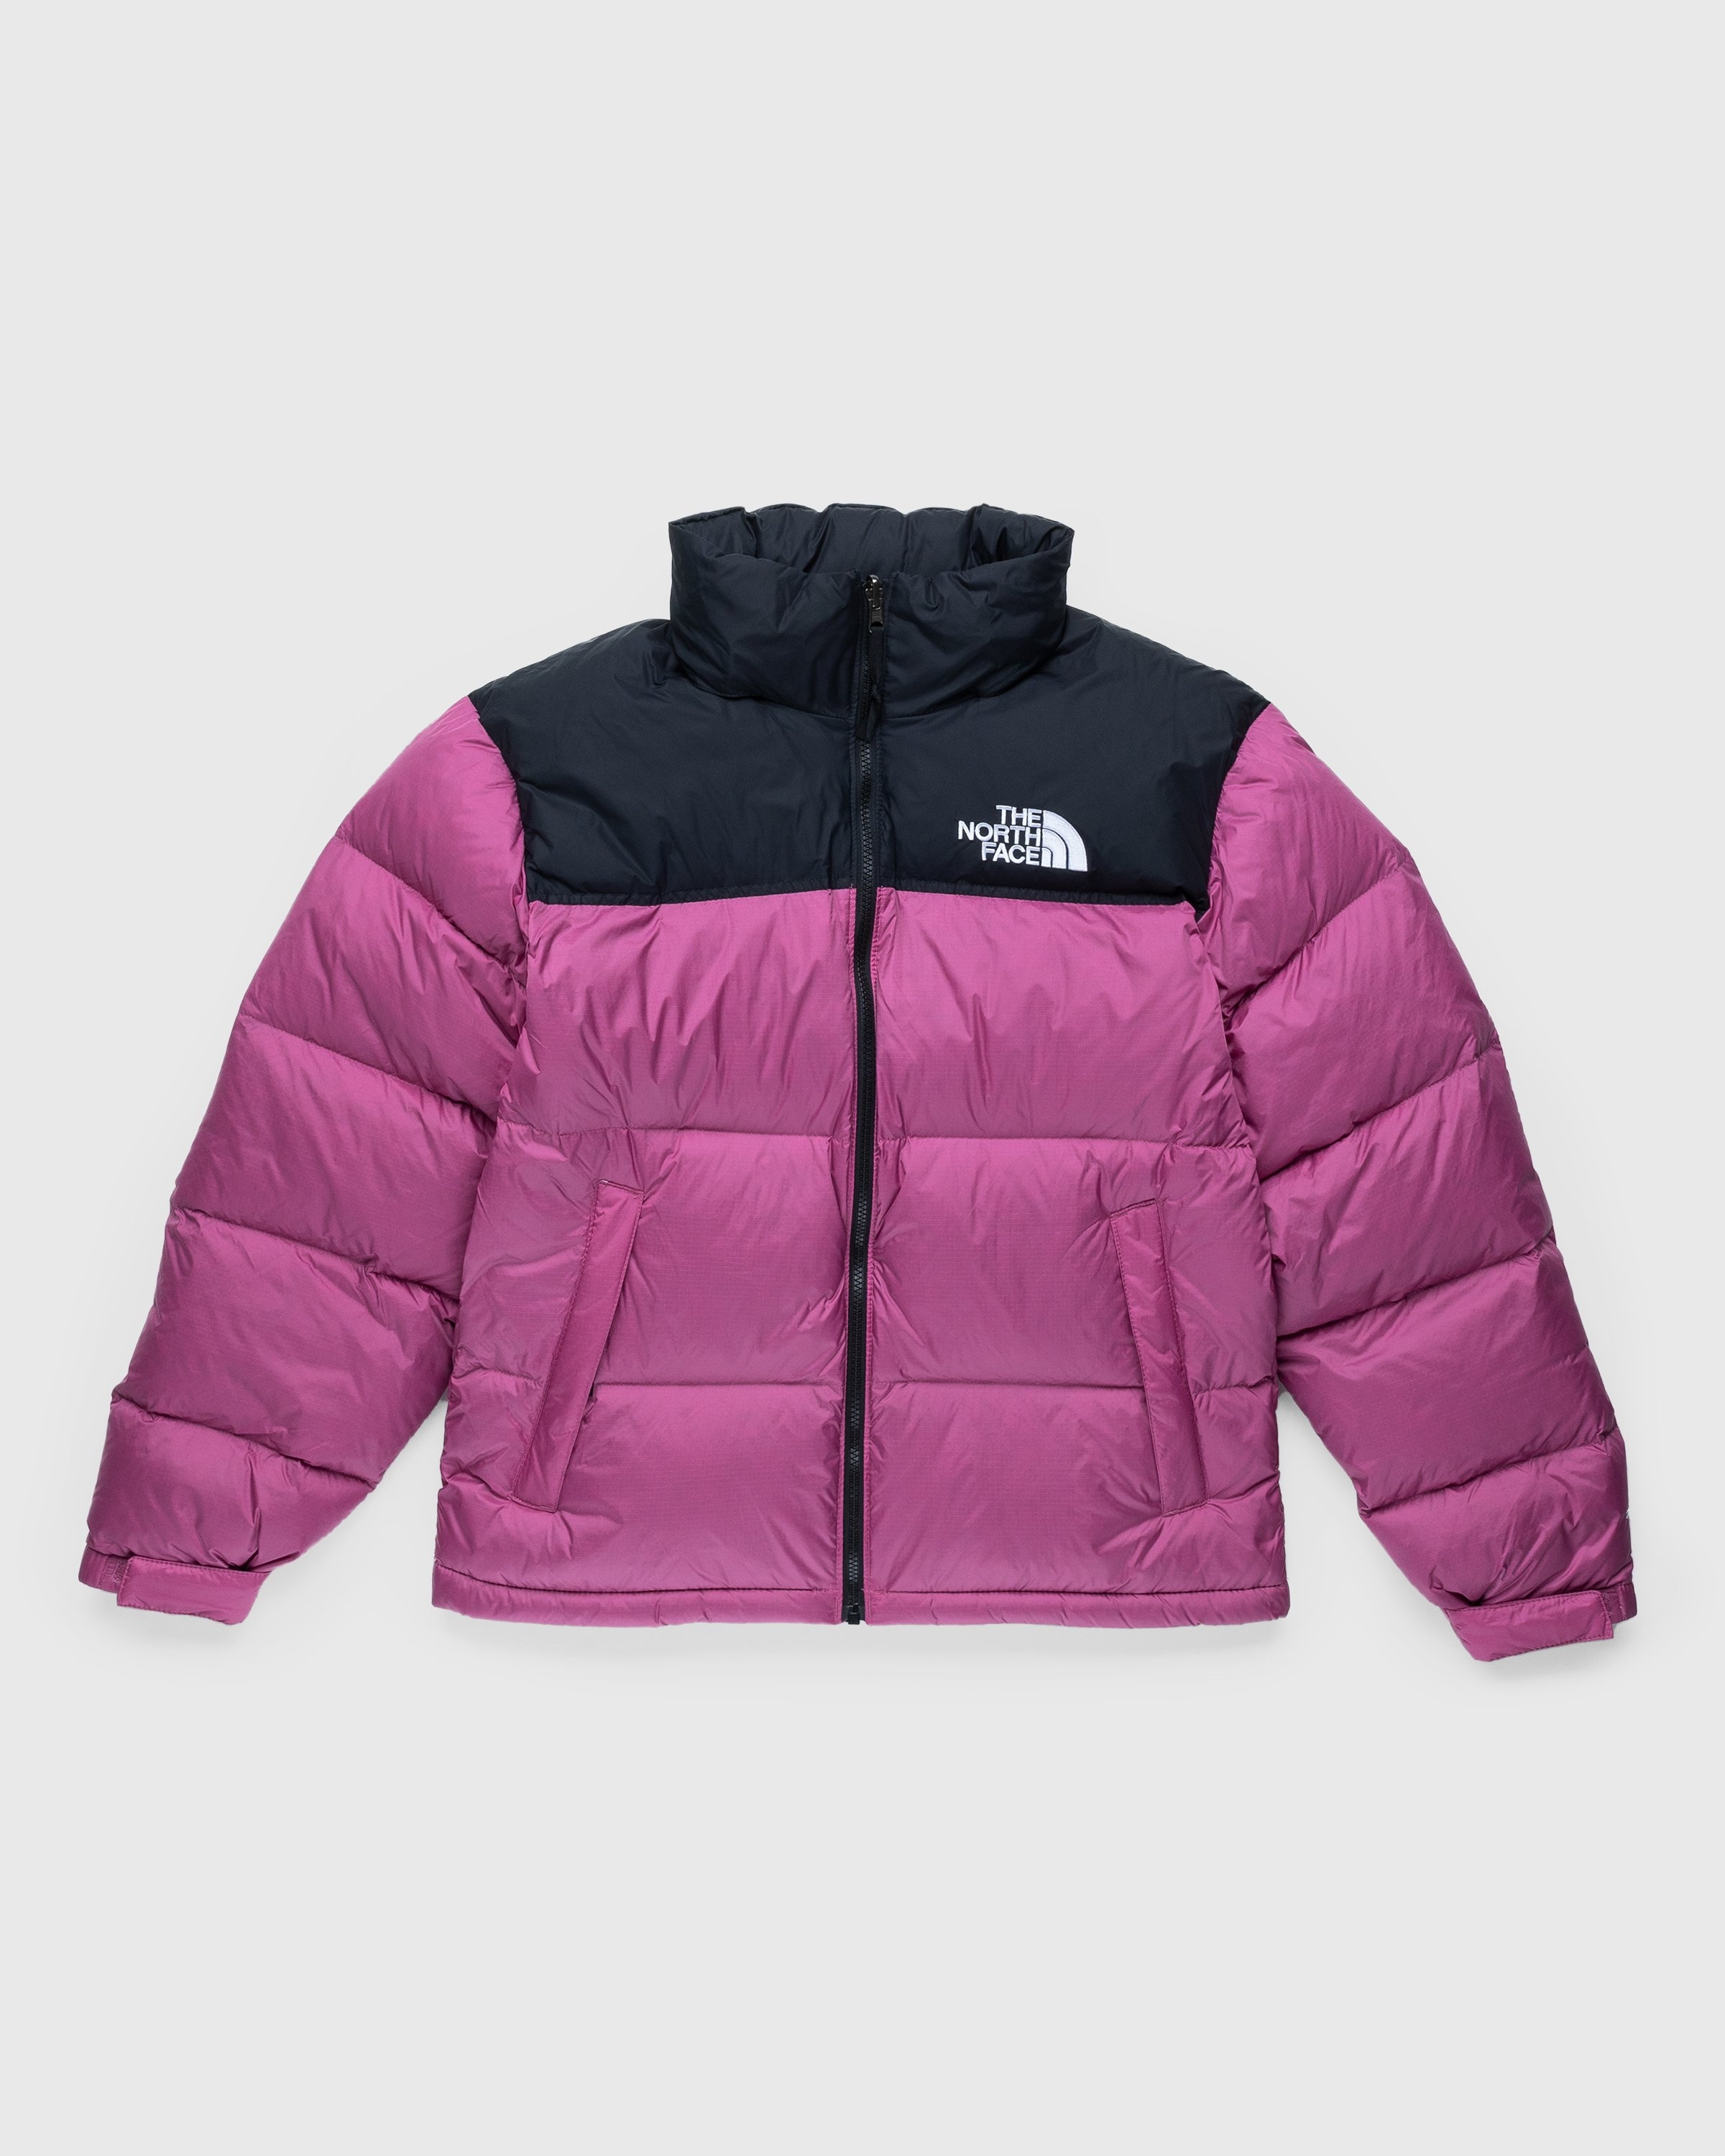 Mening Aanmoediging Veronderstelling The North Face – 1996 Retro Nuptse Jacket Red | Highsnobiety Shop